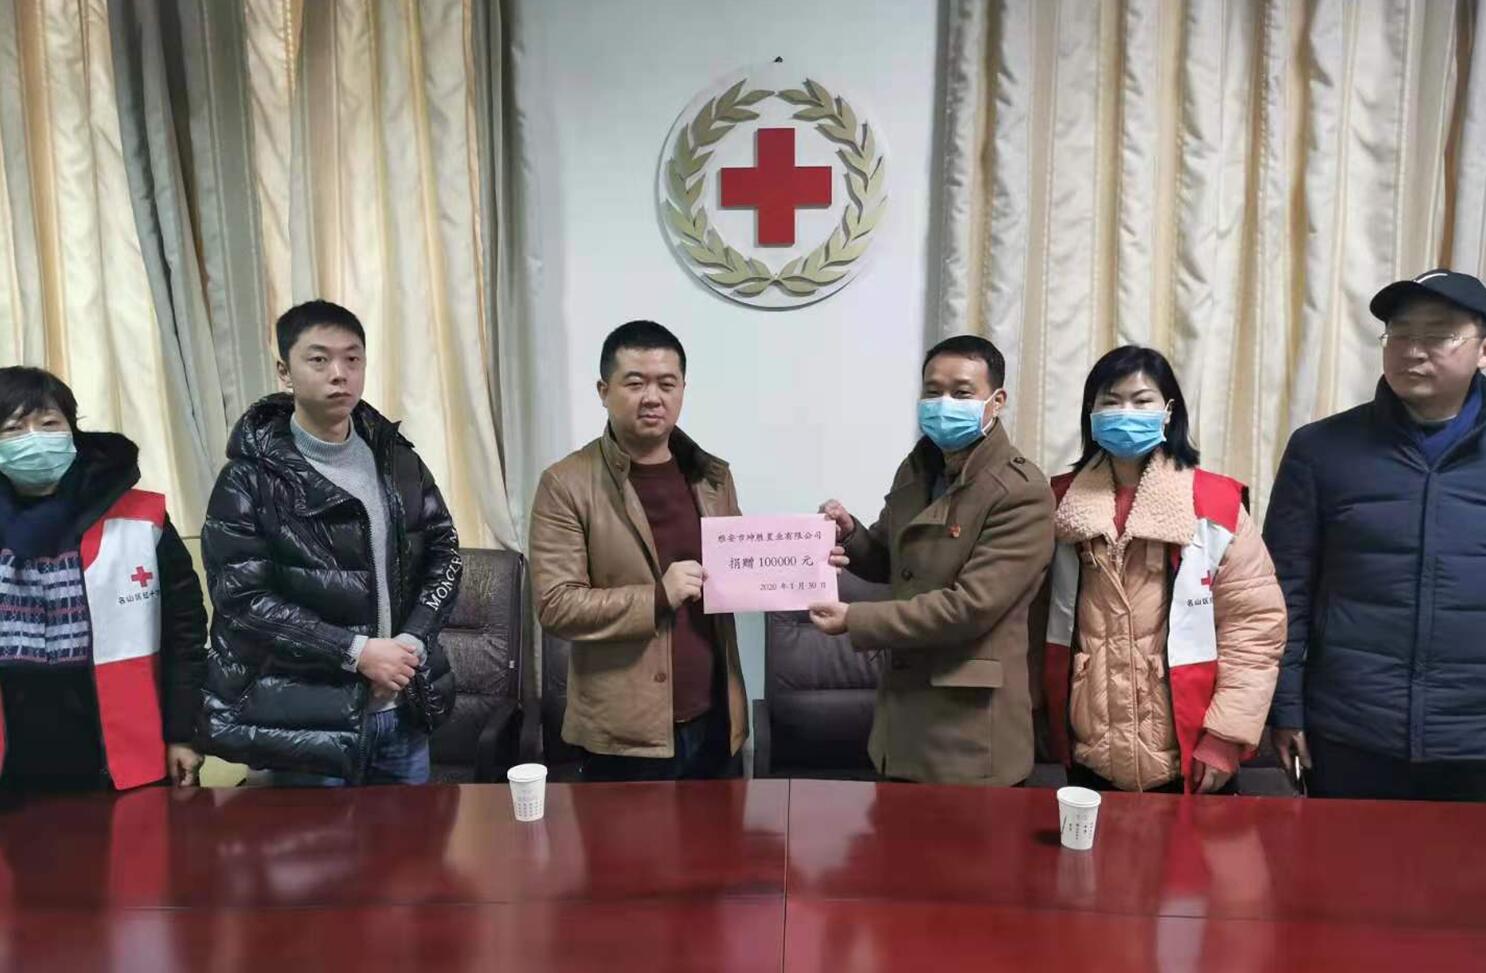 龙骧建设董事长杨威向红十字协会捐款10万元支持抗疫工作！